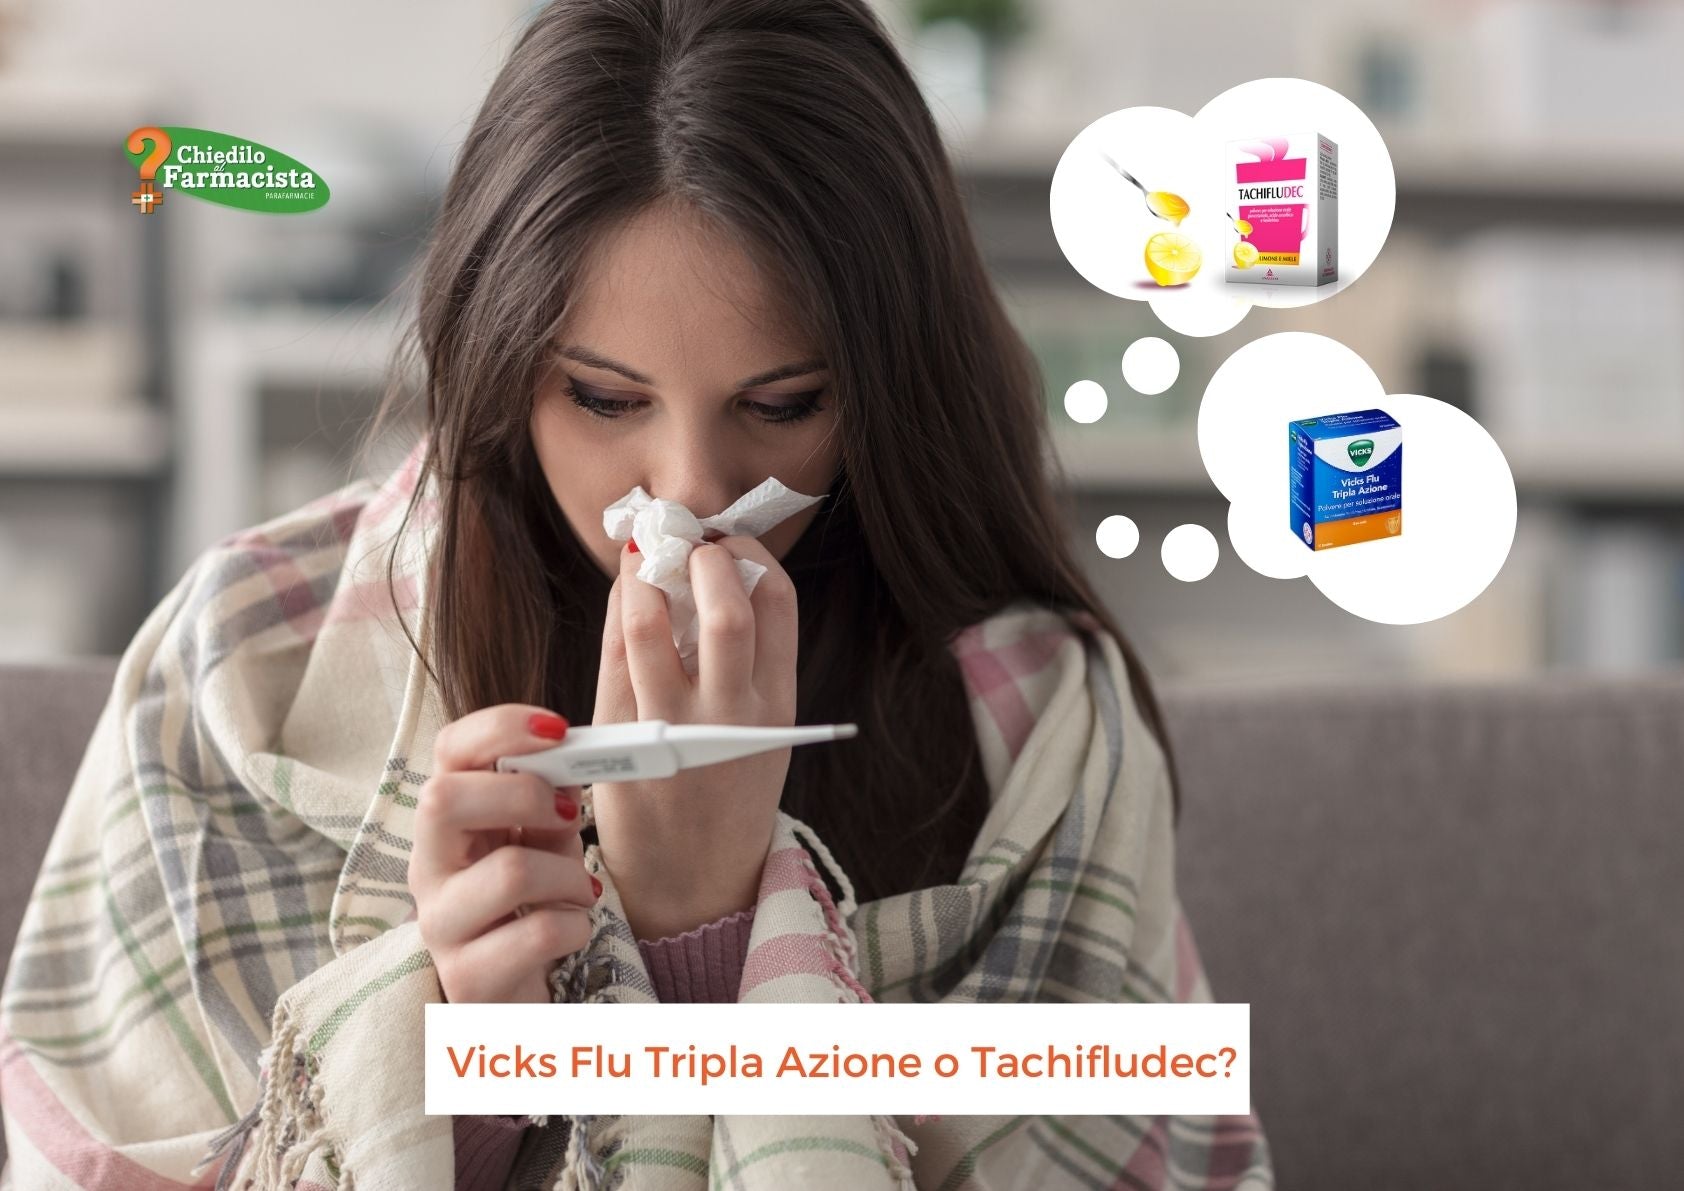 Vicks Flu Tripla Azione o Tachifludec?